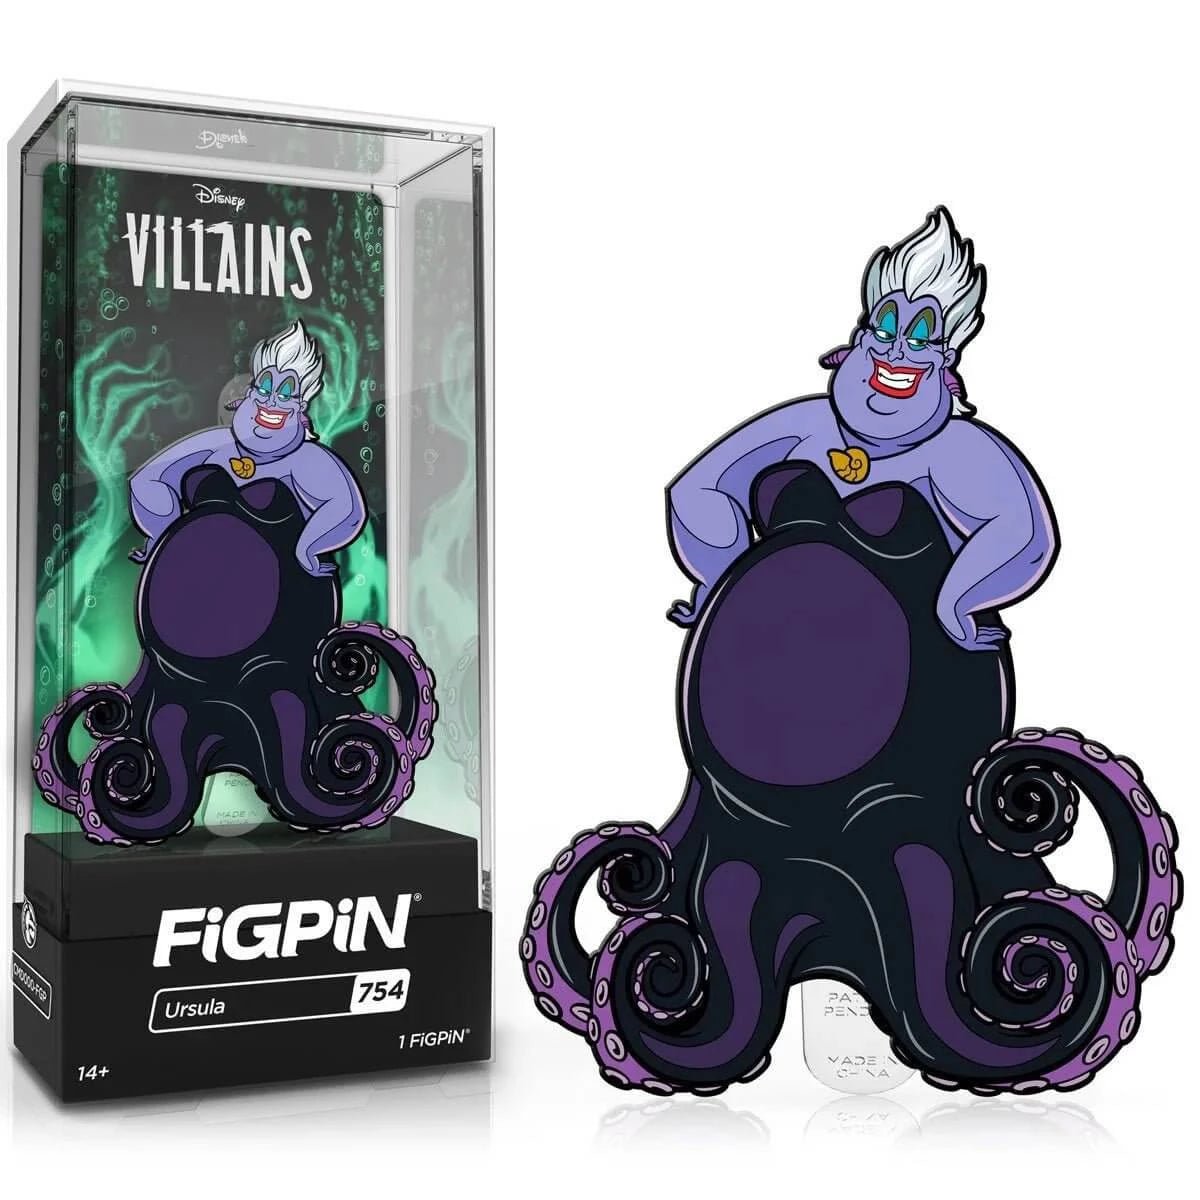 Disney Villains URSULA FiGPiN Classic Enamel Pin - Simon's Collectibles